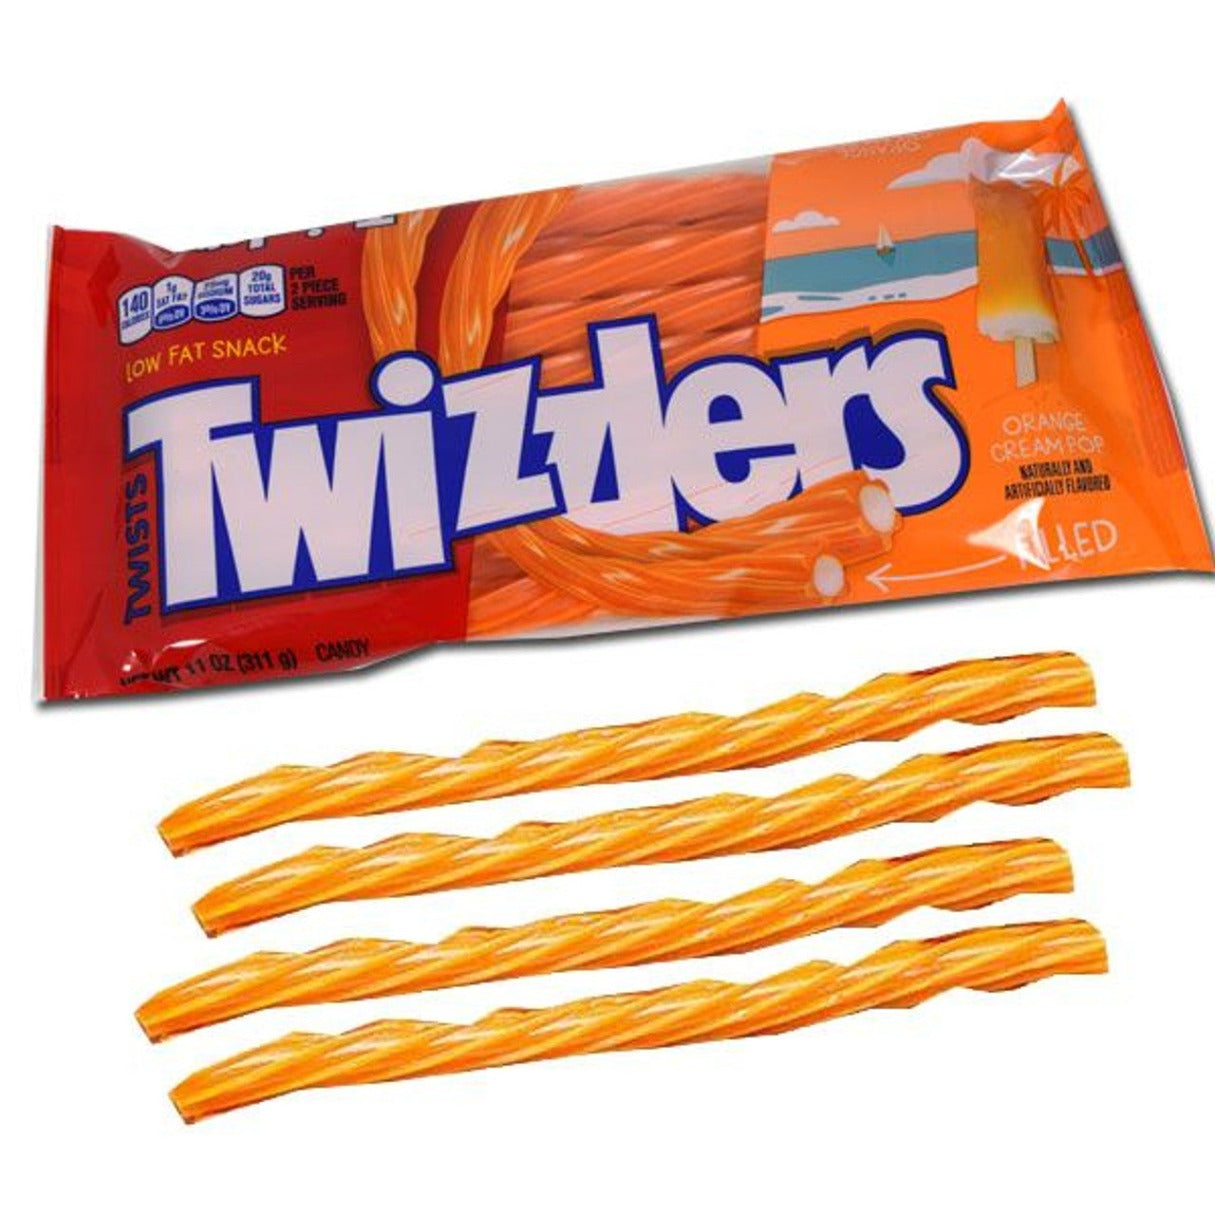 Twizzlers Filled Orange Cream 11oz - 12ct